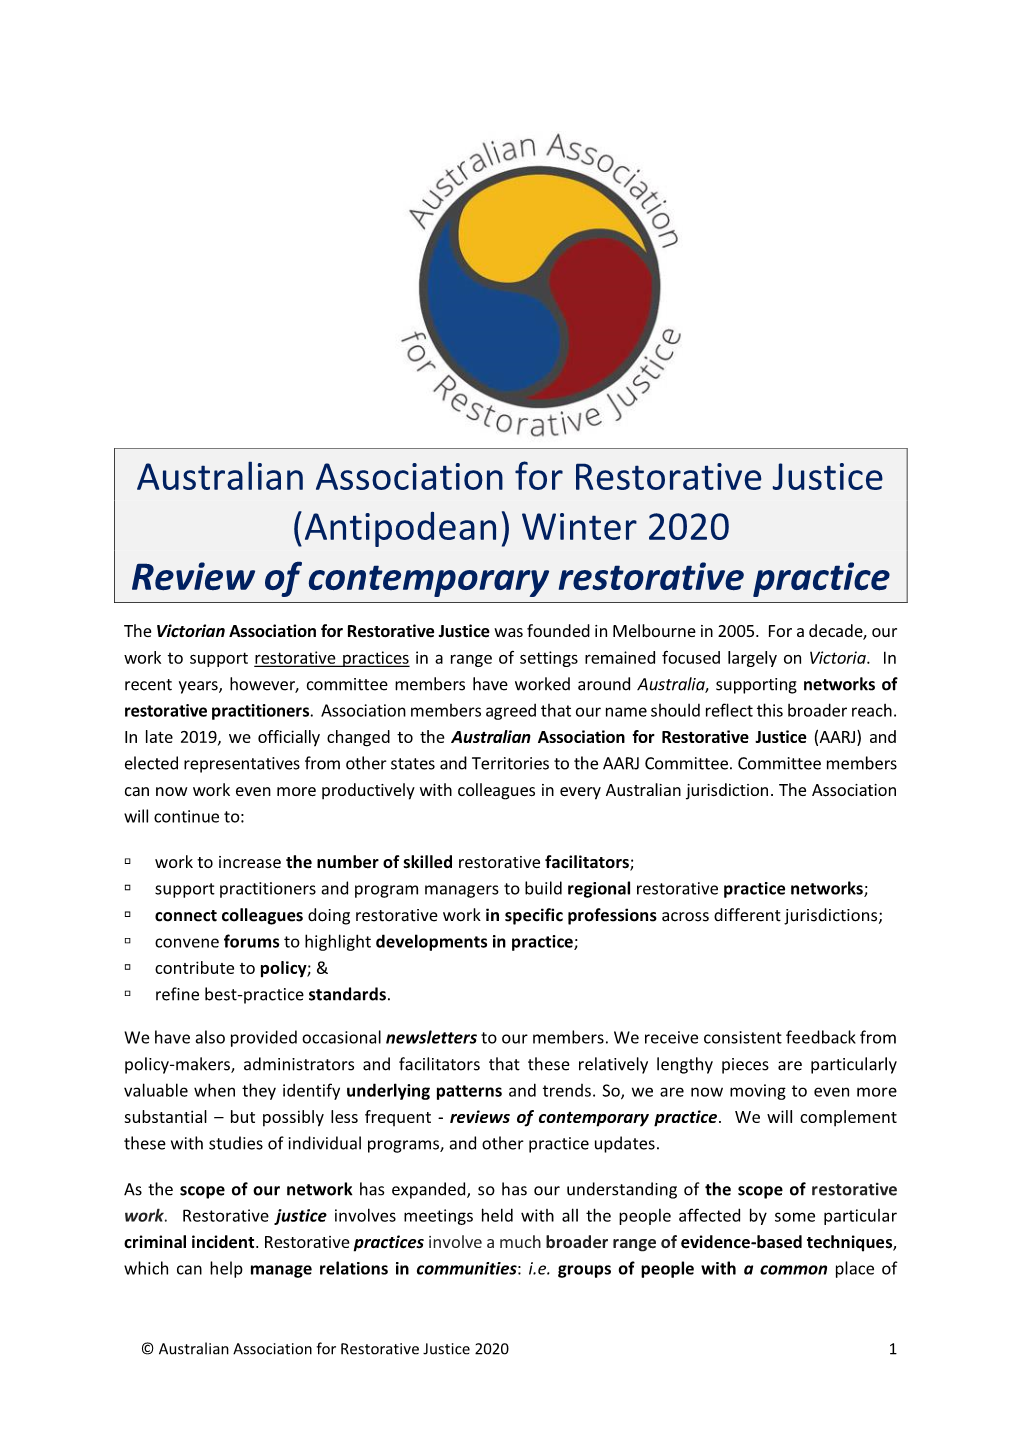 AARJ WINTER 2020 Review of Practice